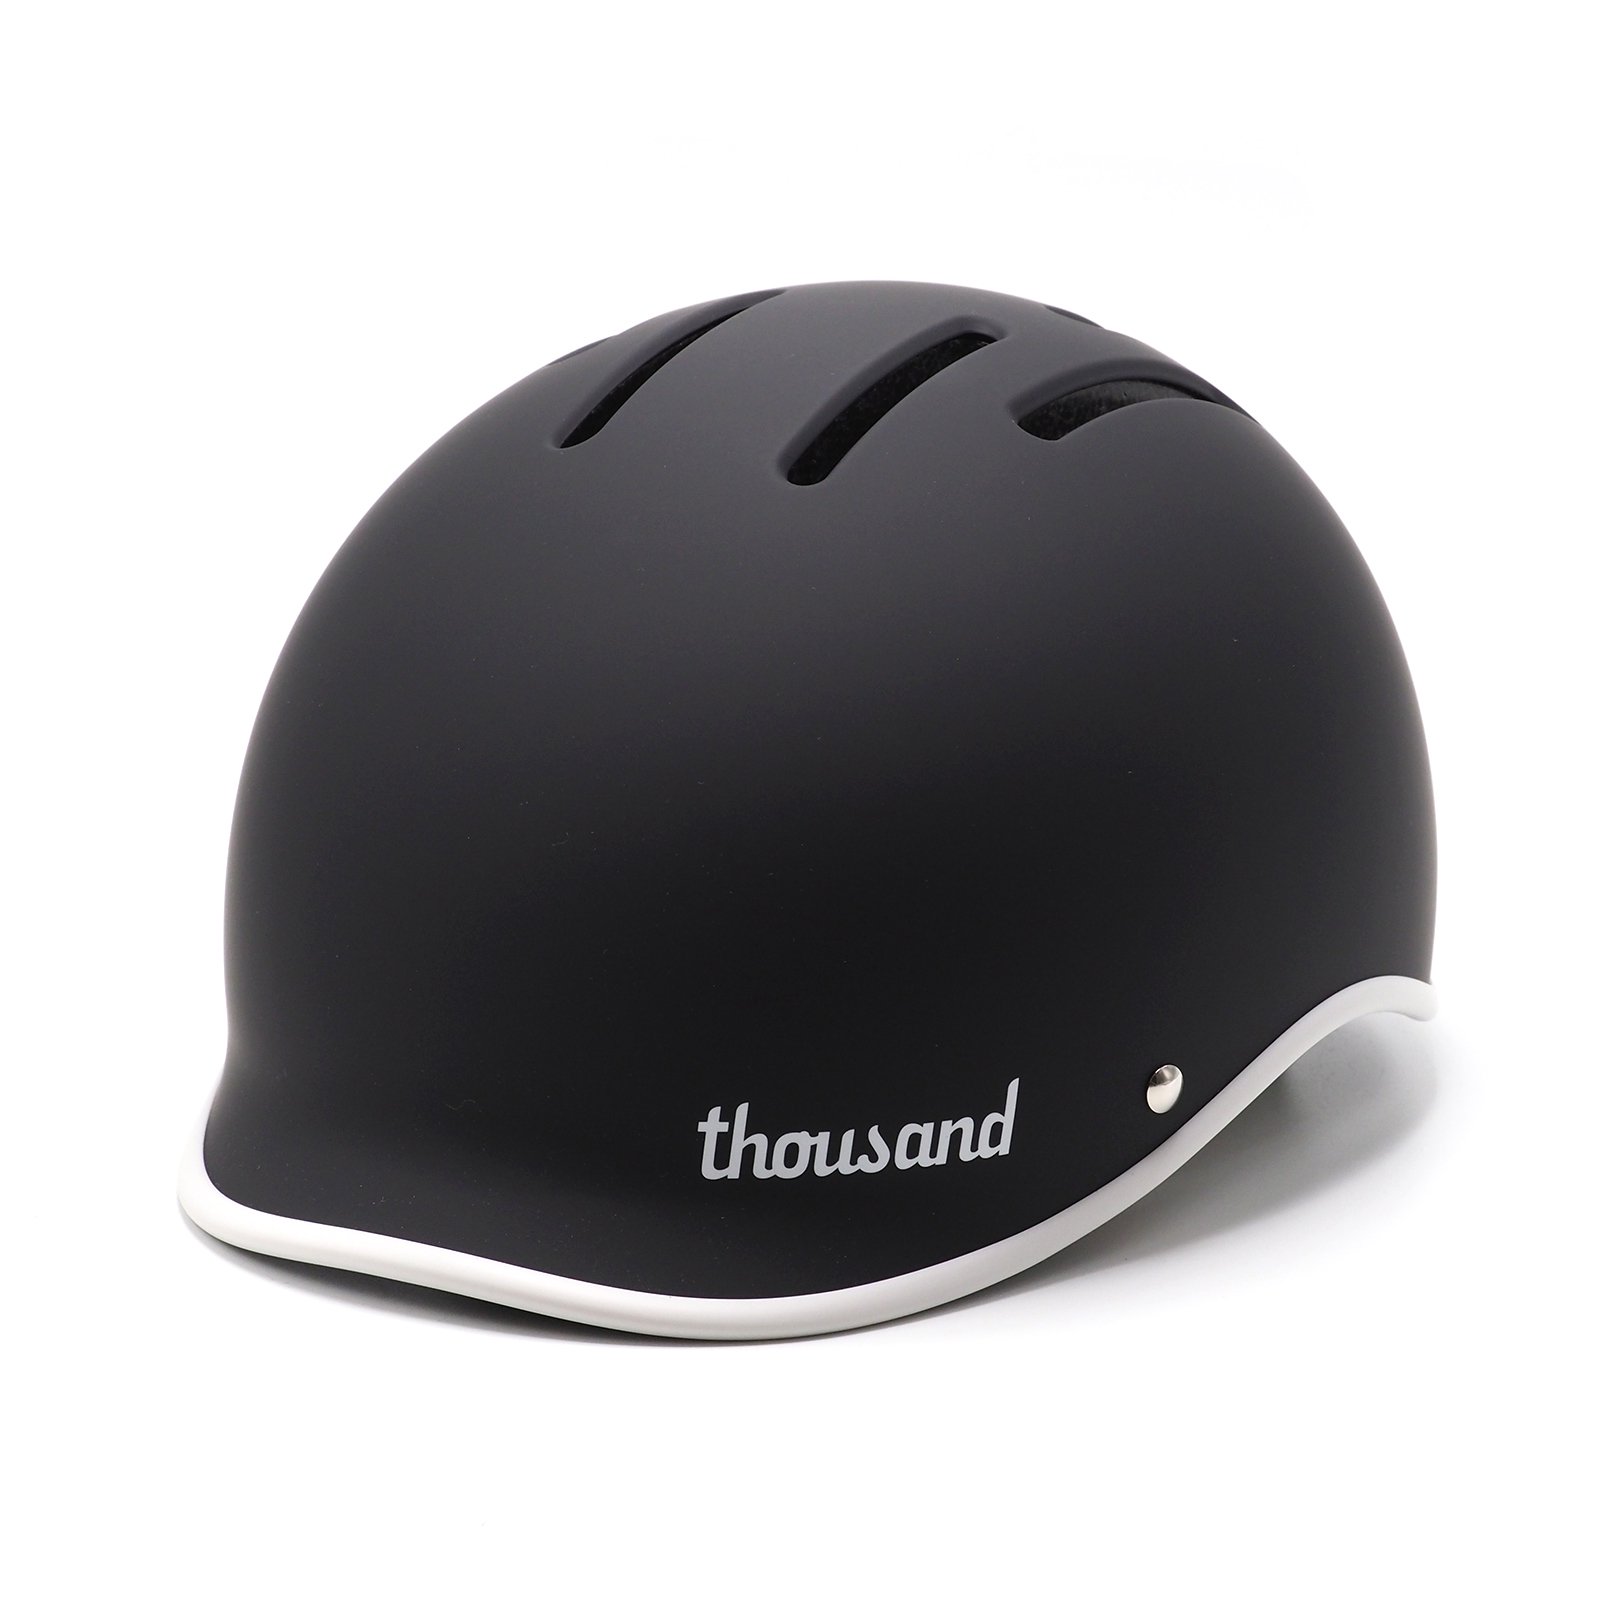 Thousand - Heritage 2.0 Bike & Skate Helmet / Carbon Black - ParkSIDER